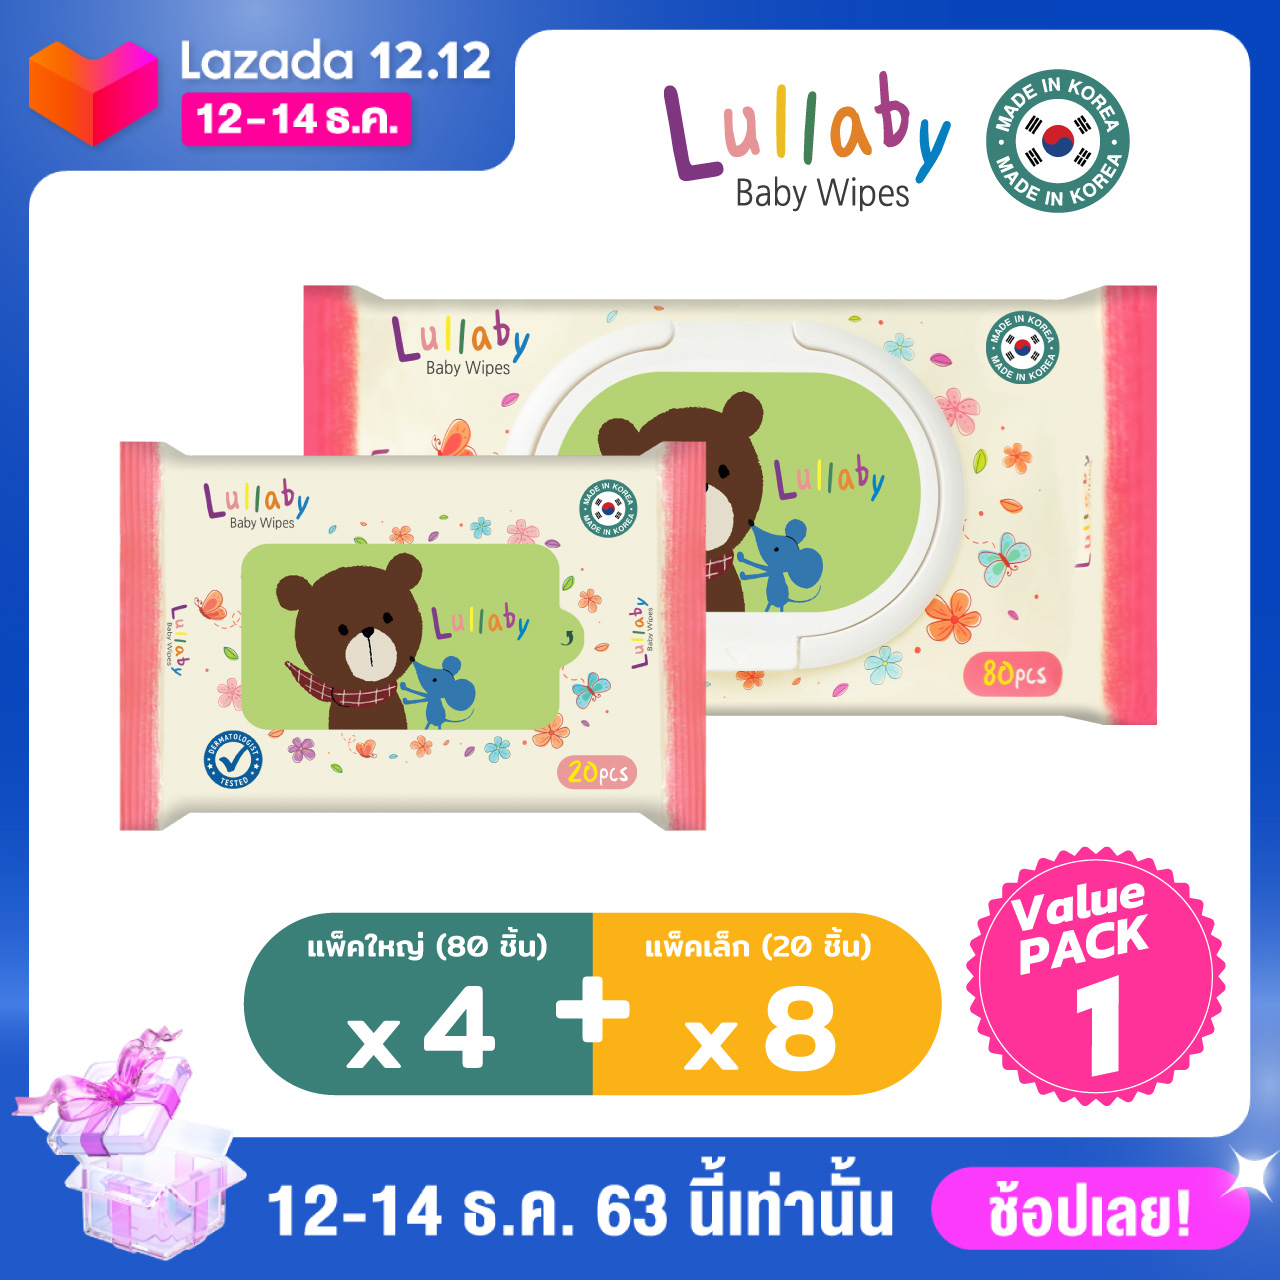 ราคา Lullaby baby wipes ทิชชู่เปียกลัลลาบาย สูตร น้ำแร่จากฝรั่งเศส value pack 1 โปรโมชั่นไซส์ใหญ่ 80 *4 แพ็ค+ 20 แผ่น 8 แพ็ค